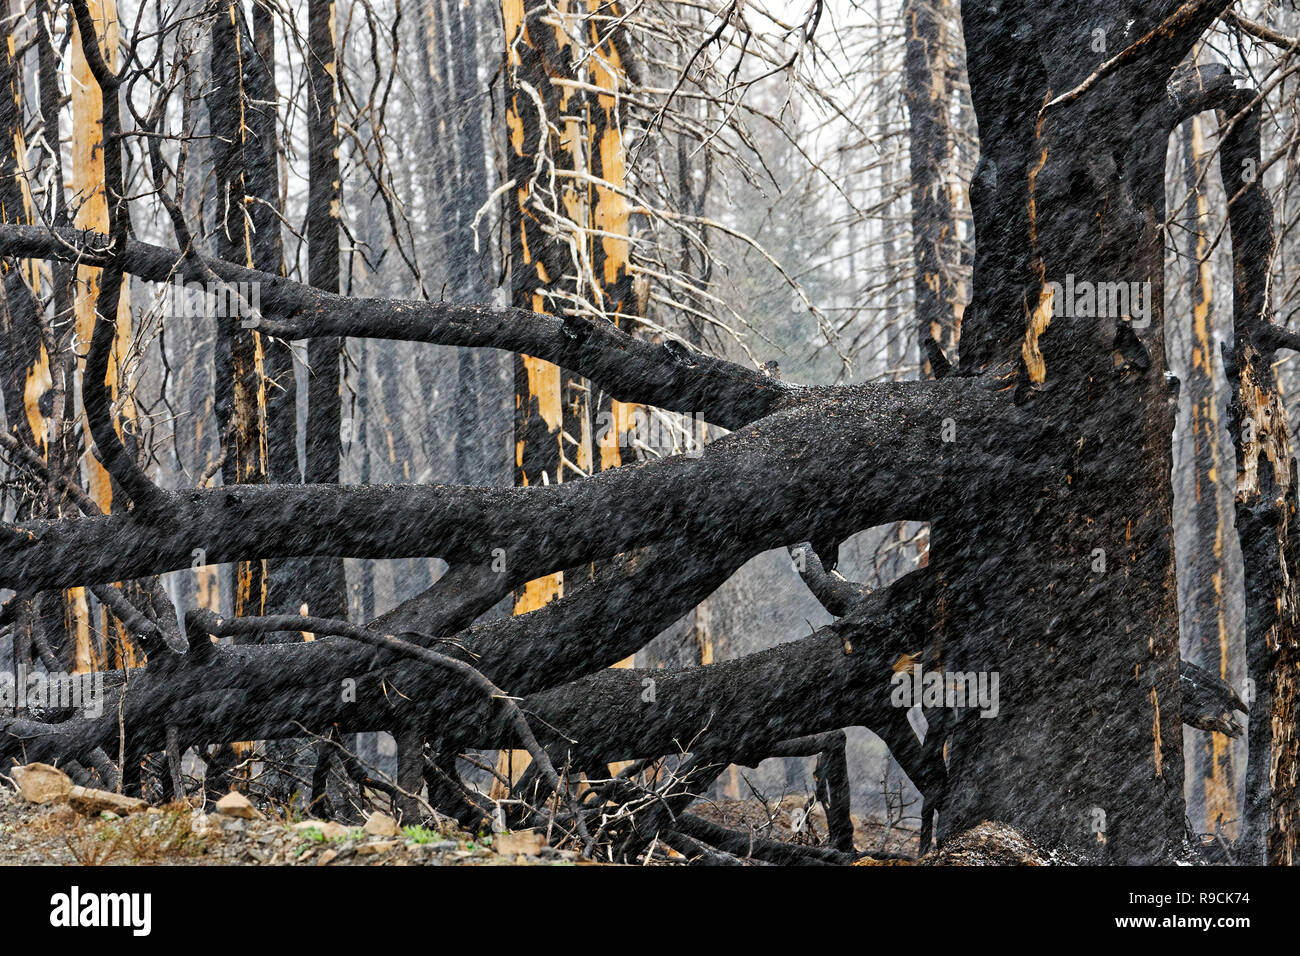 42,895.03613 negro permanece cerca de conífera pinos incendio forestal, estando muertos ennegrecidos por incendios forestales masivos abrasadora caliente, Oregon, EE.UU. Foto de stock